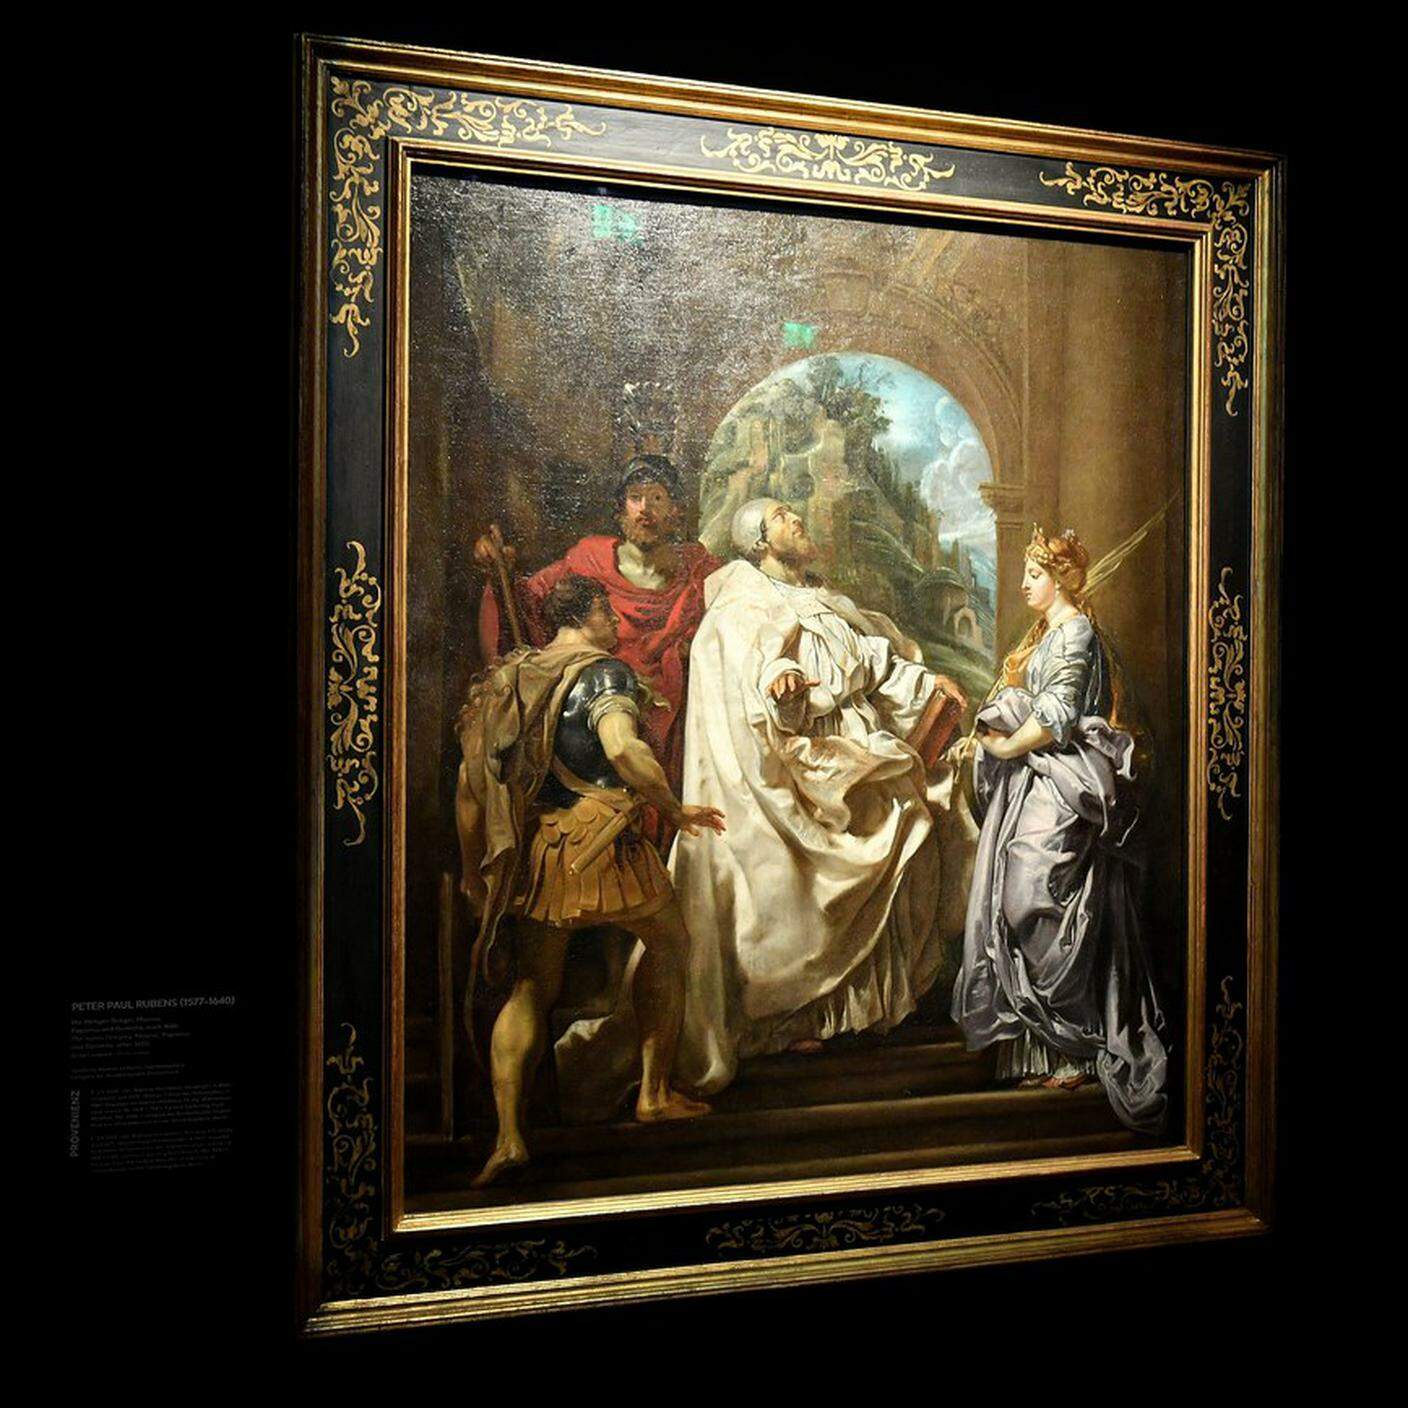 Peter Paul Rubens, "The Saints Gregory, Maurus, and Papianus and Domitilla", quadro della collezione di Cornelius Gurlitt, Keystone